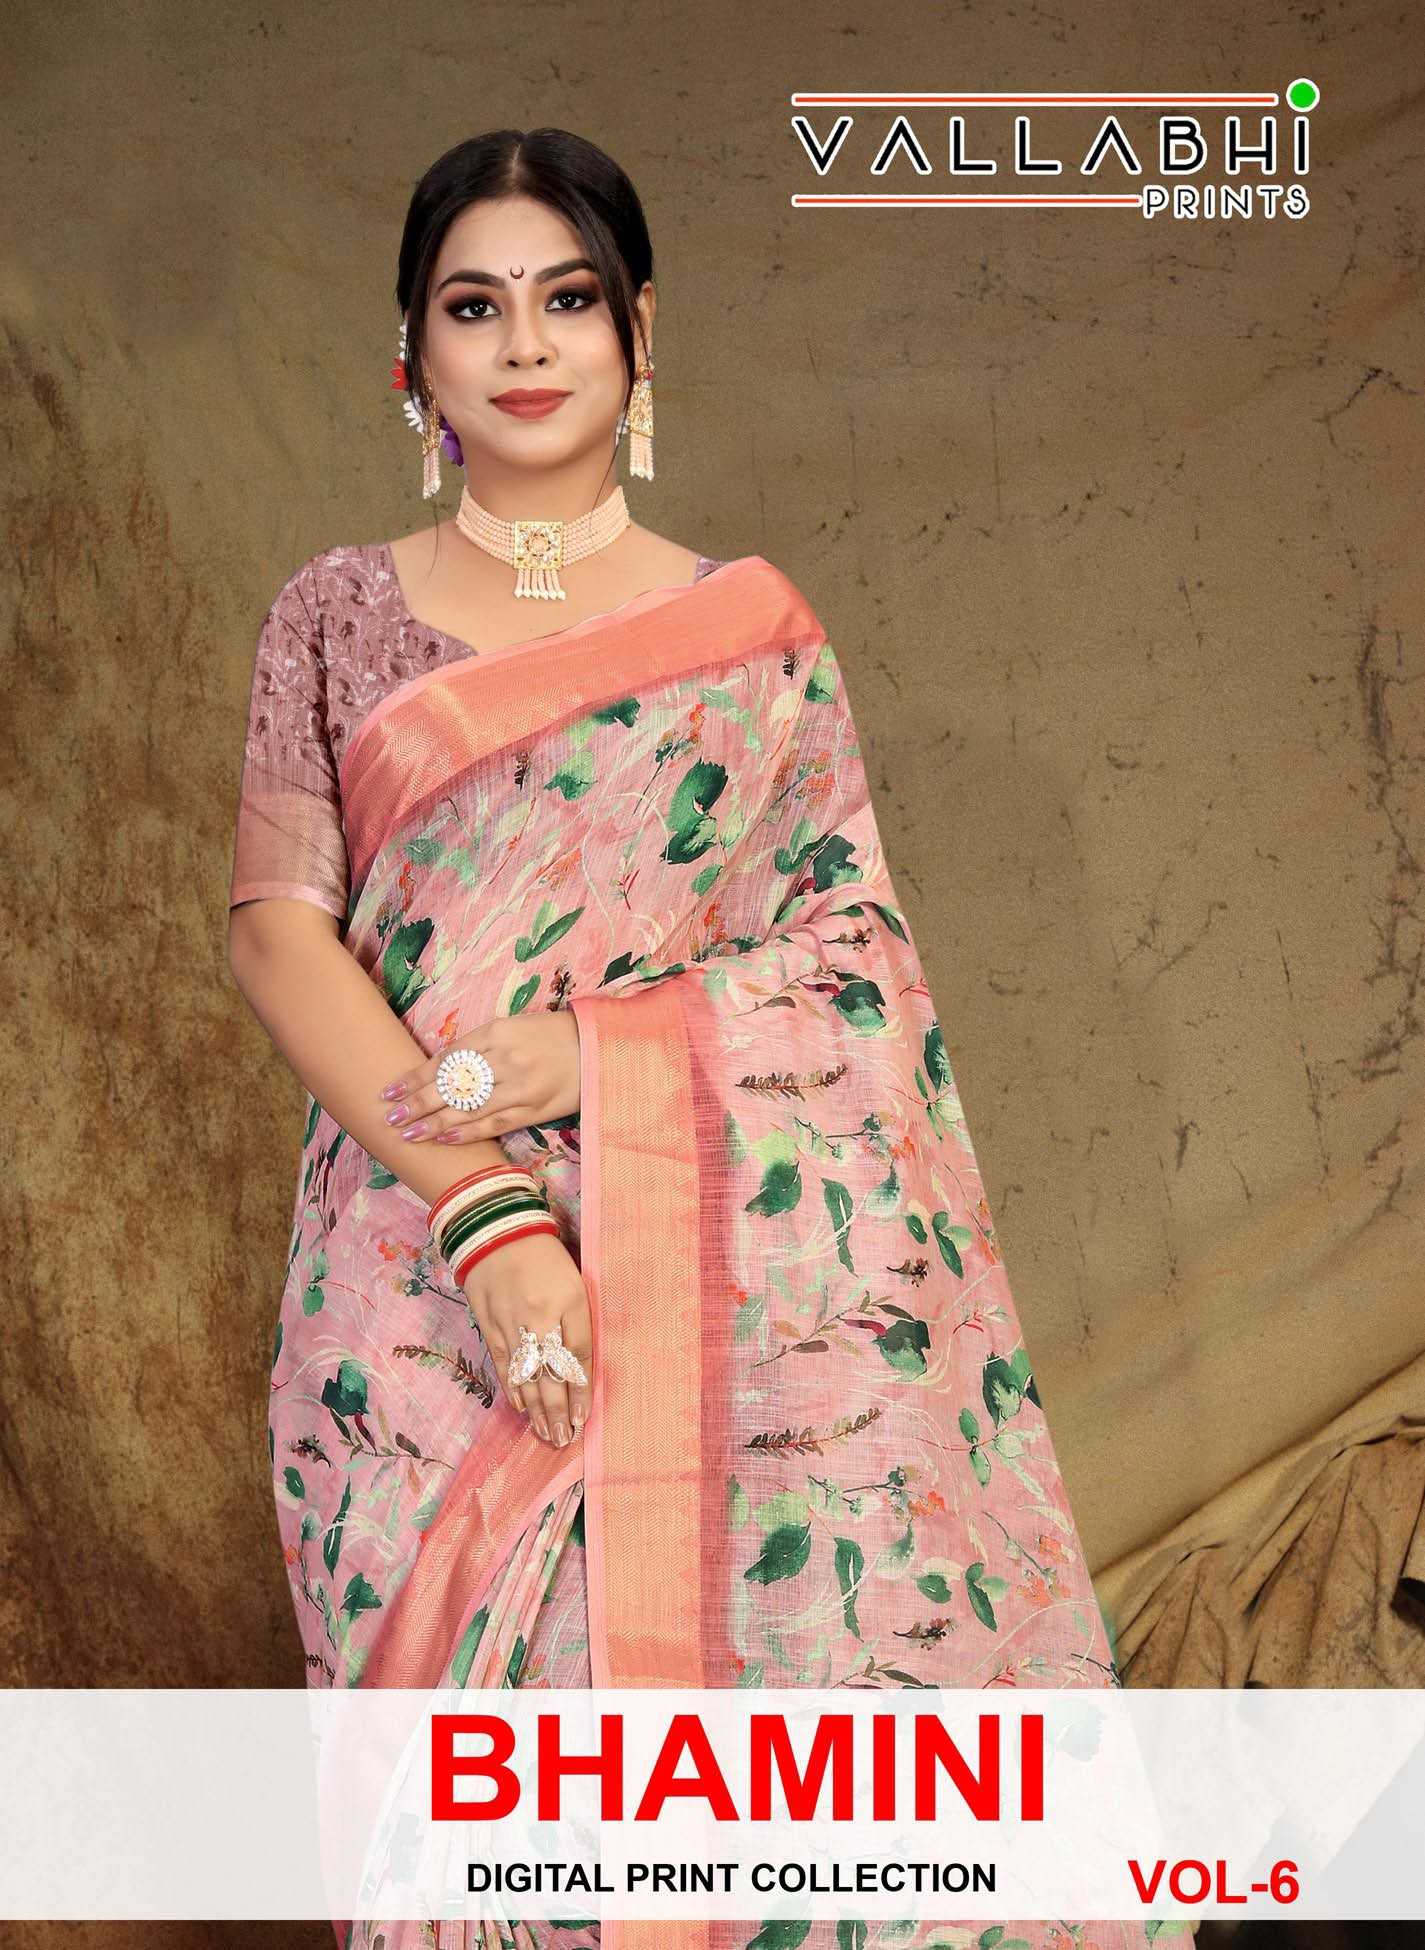 vallabhi prints bhamini vol 6 linen digital print sarees online trader